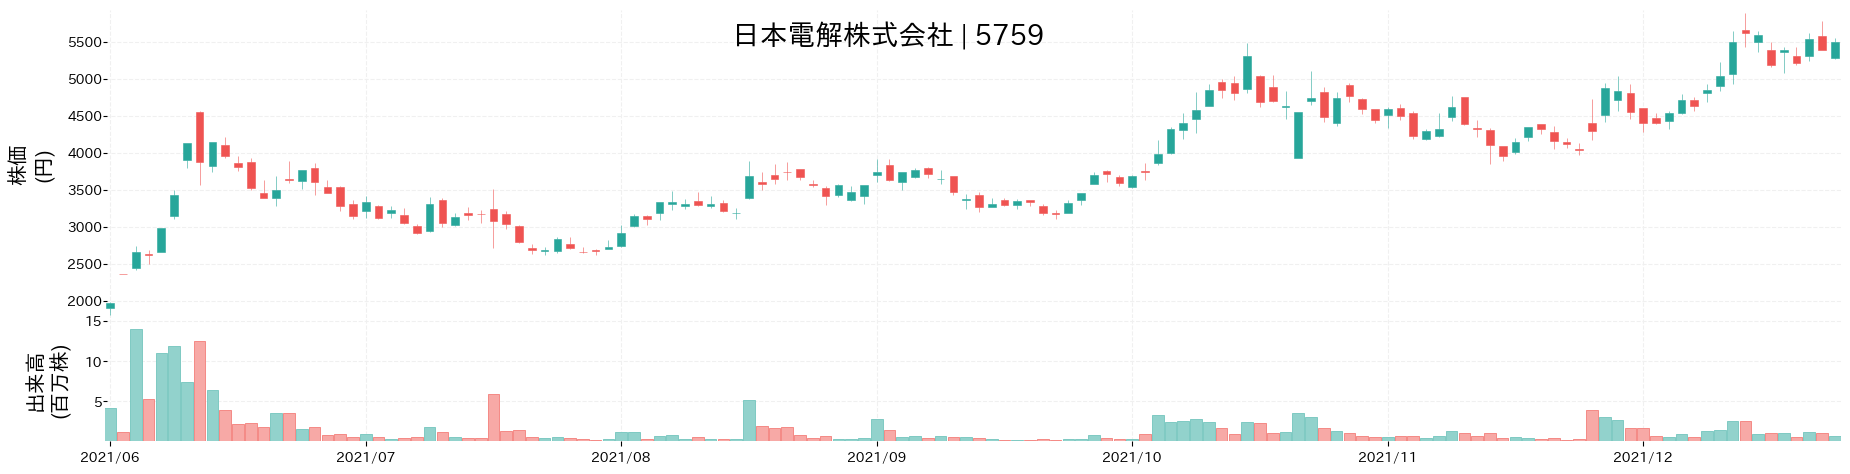 日本電解の株価推移(2021)